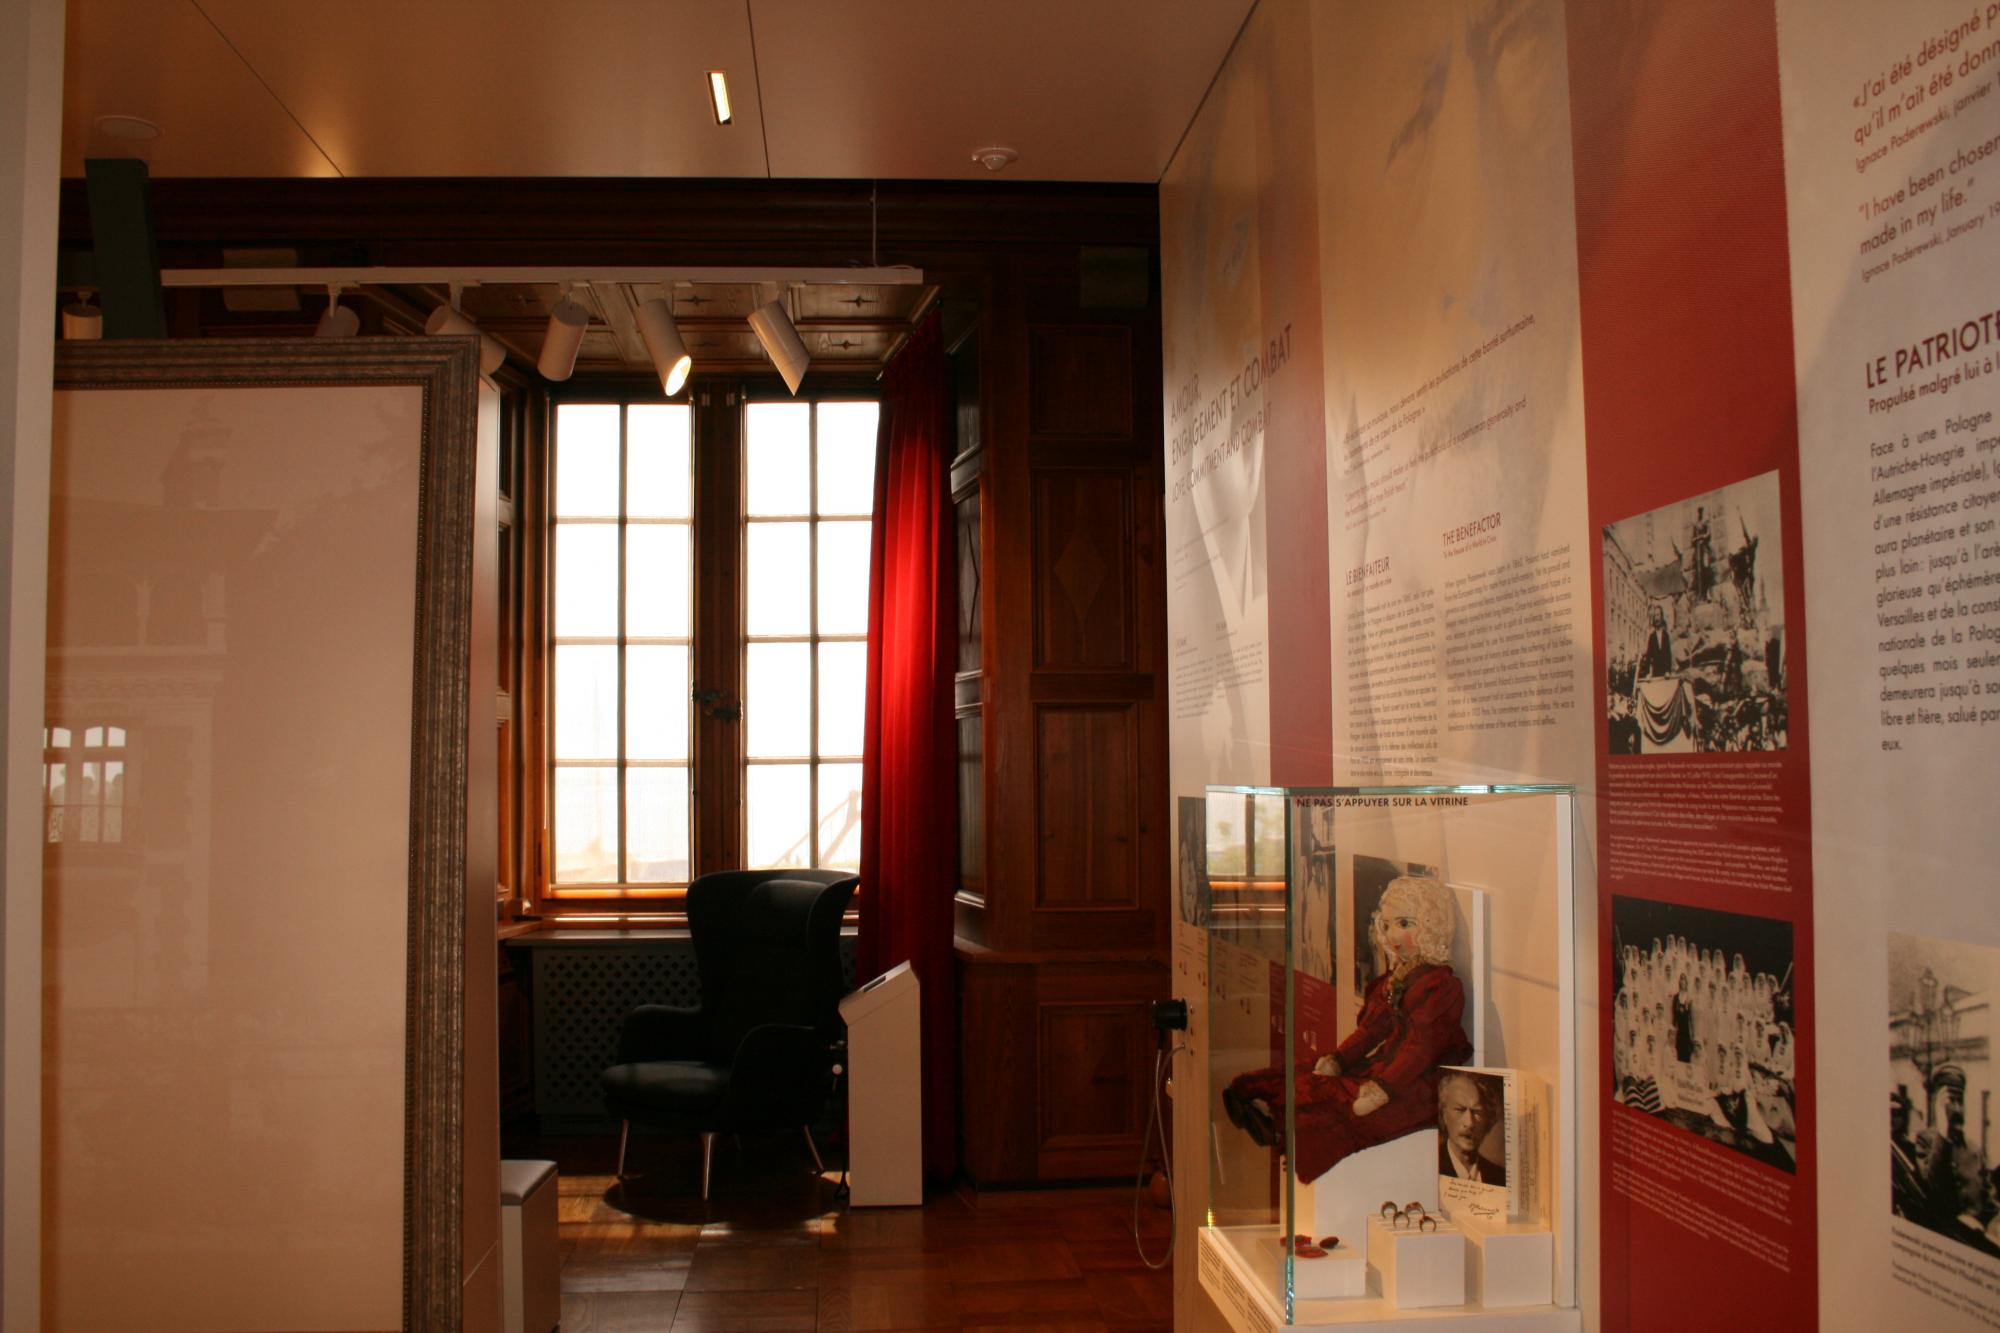 Paderewski Museum